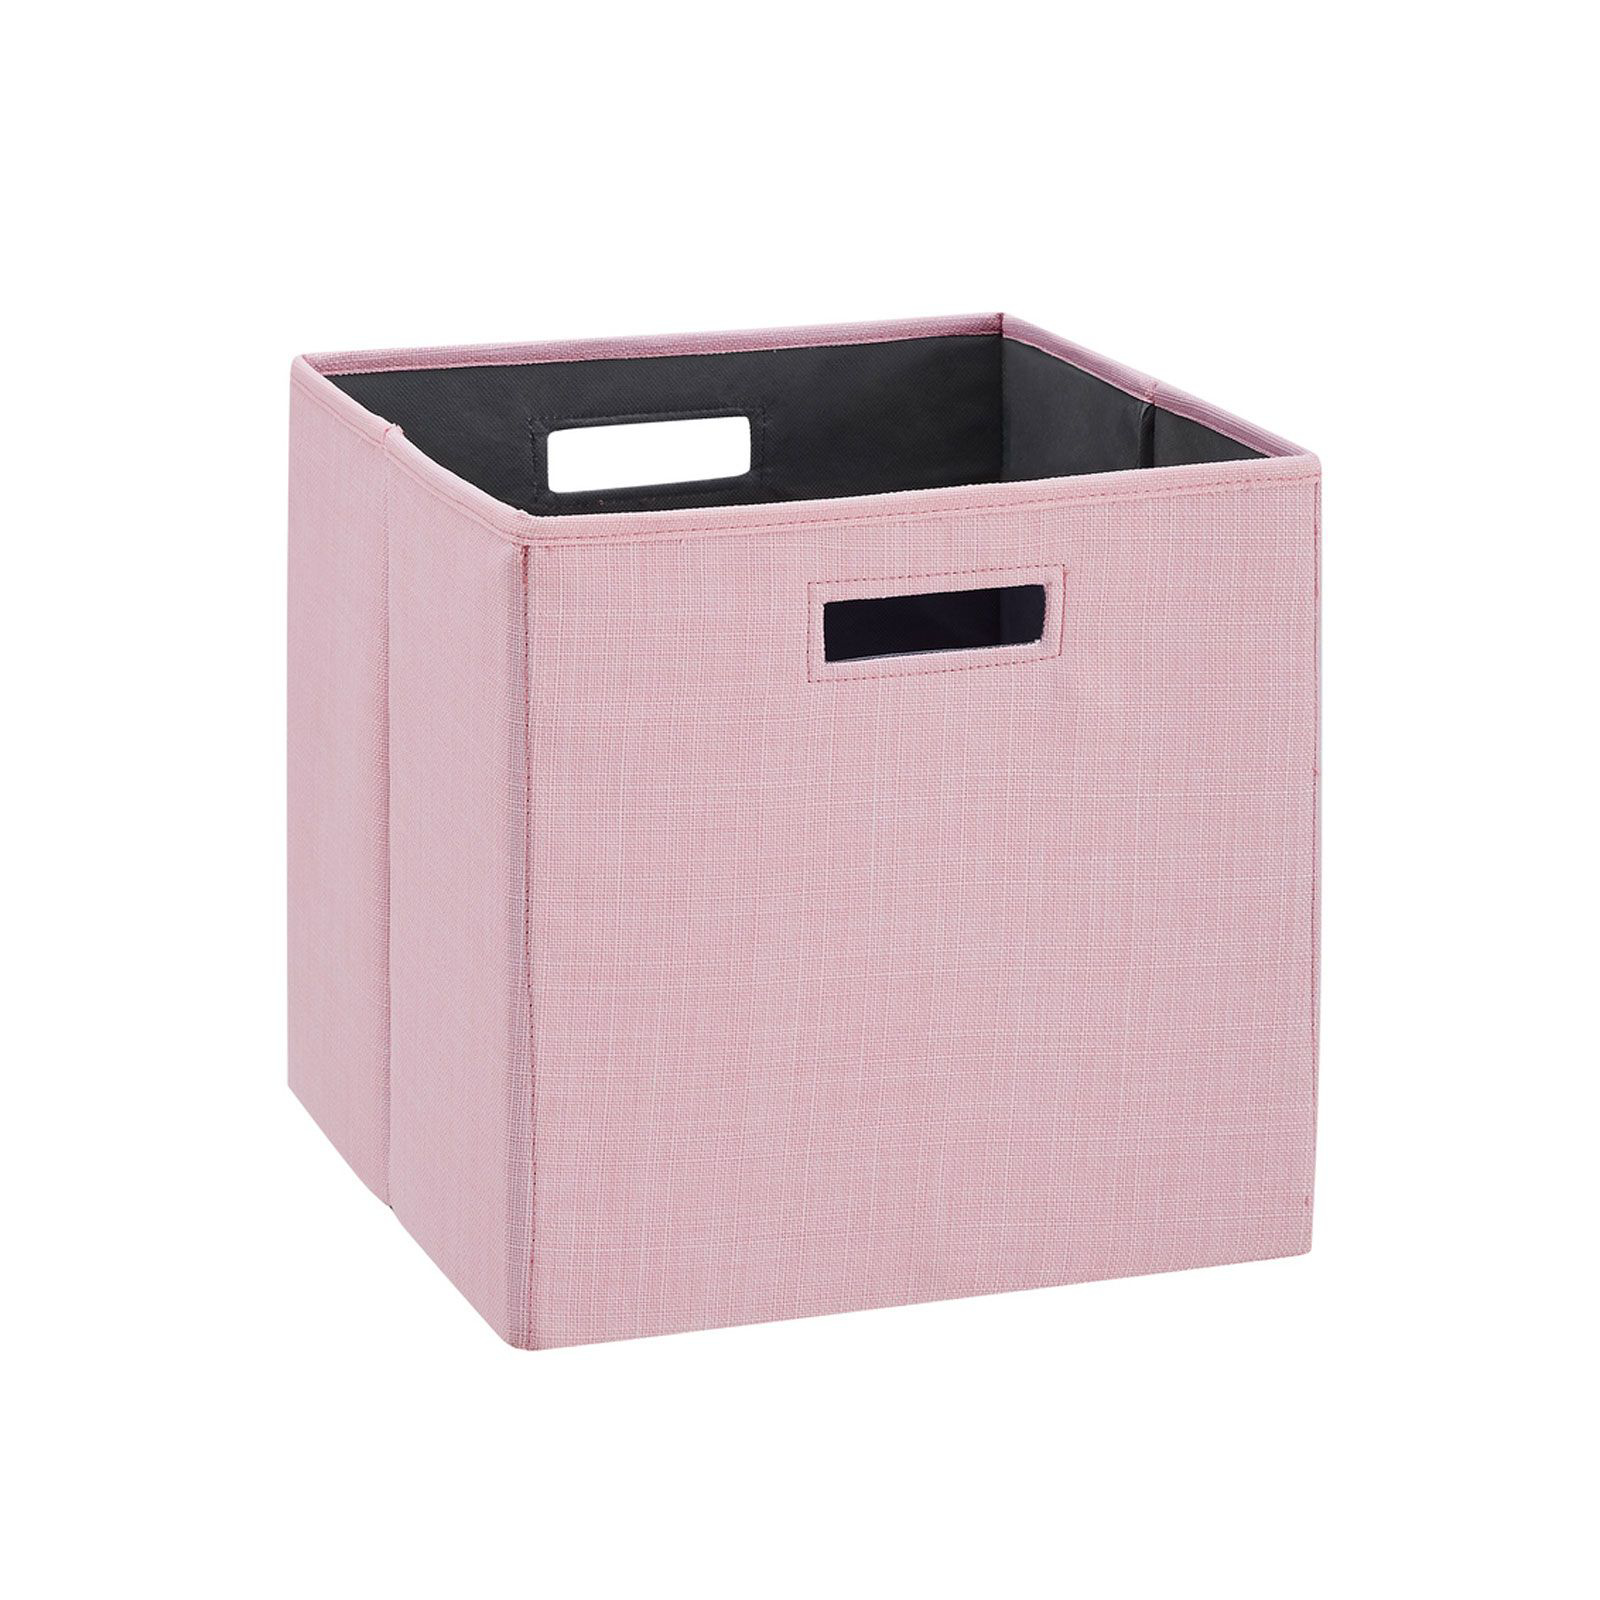 Pink Storage Bins & Baskets at